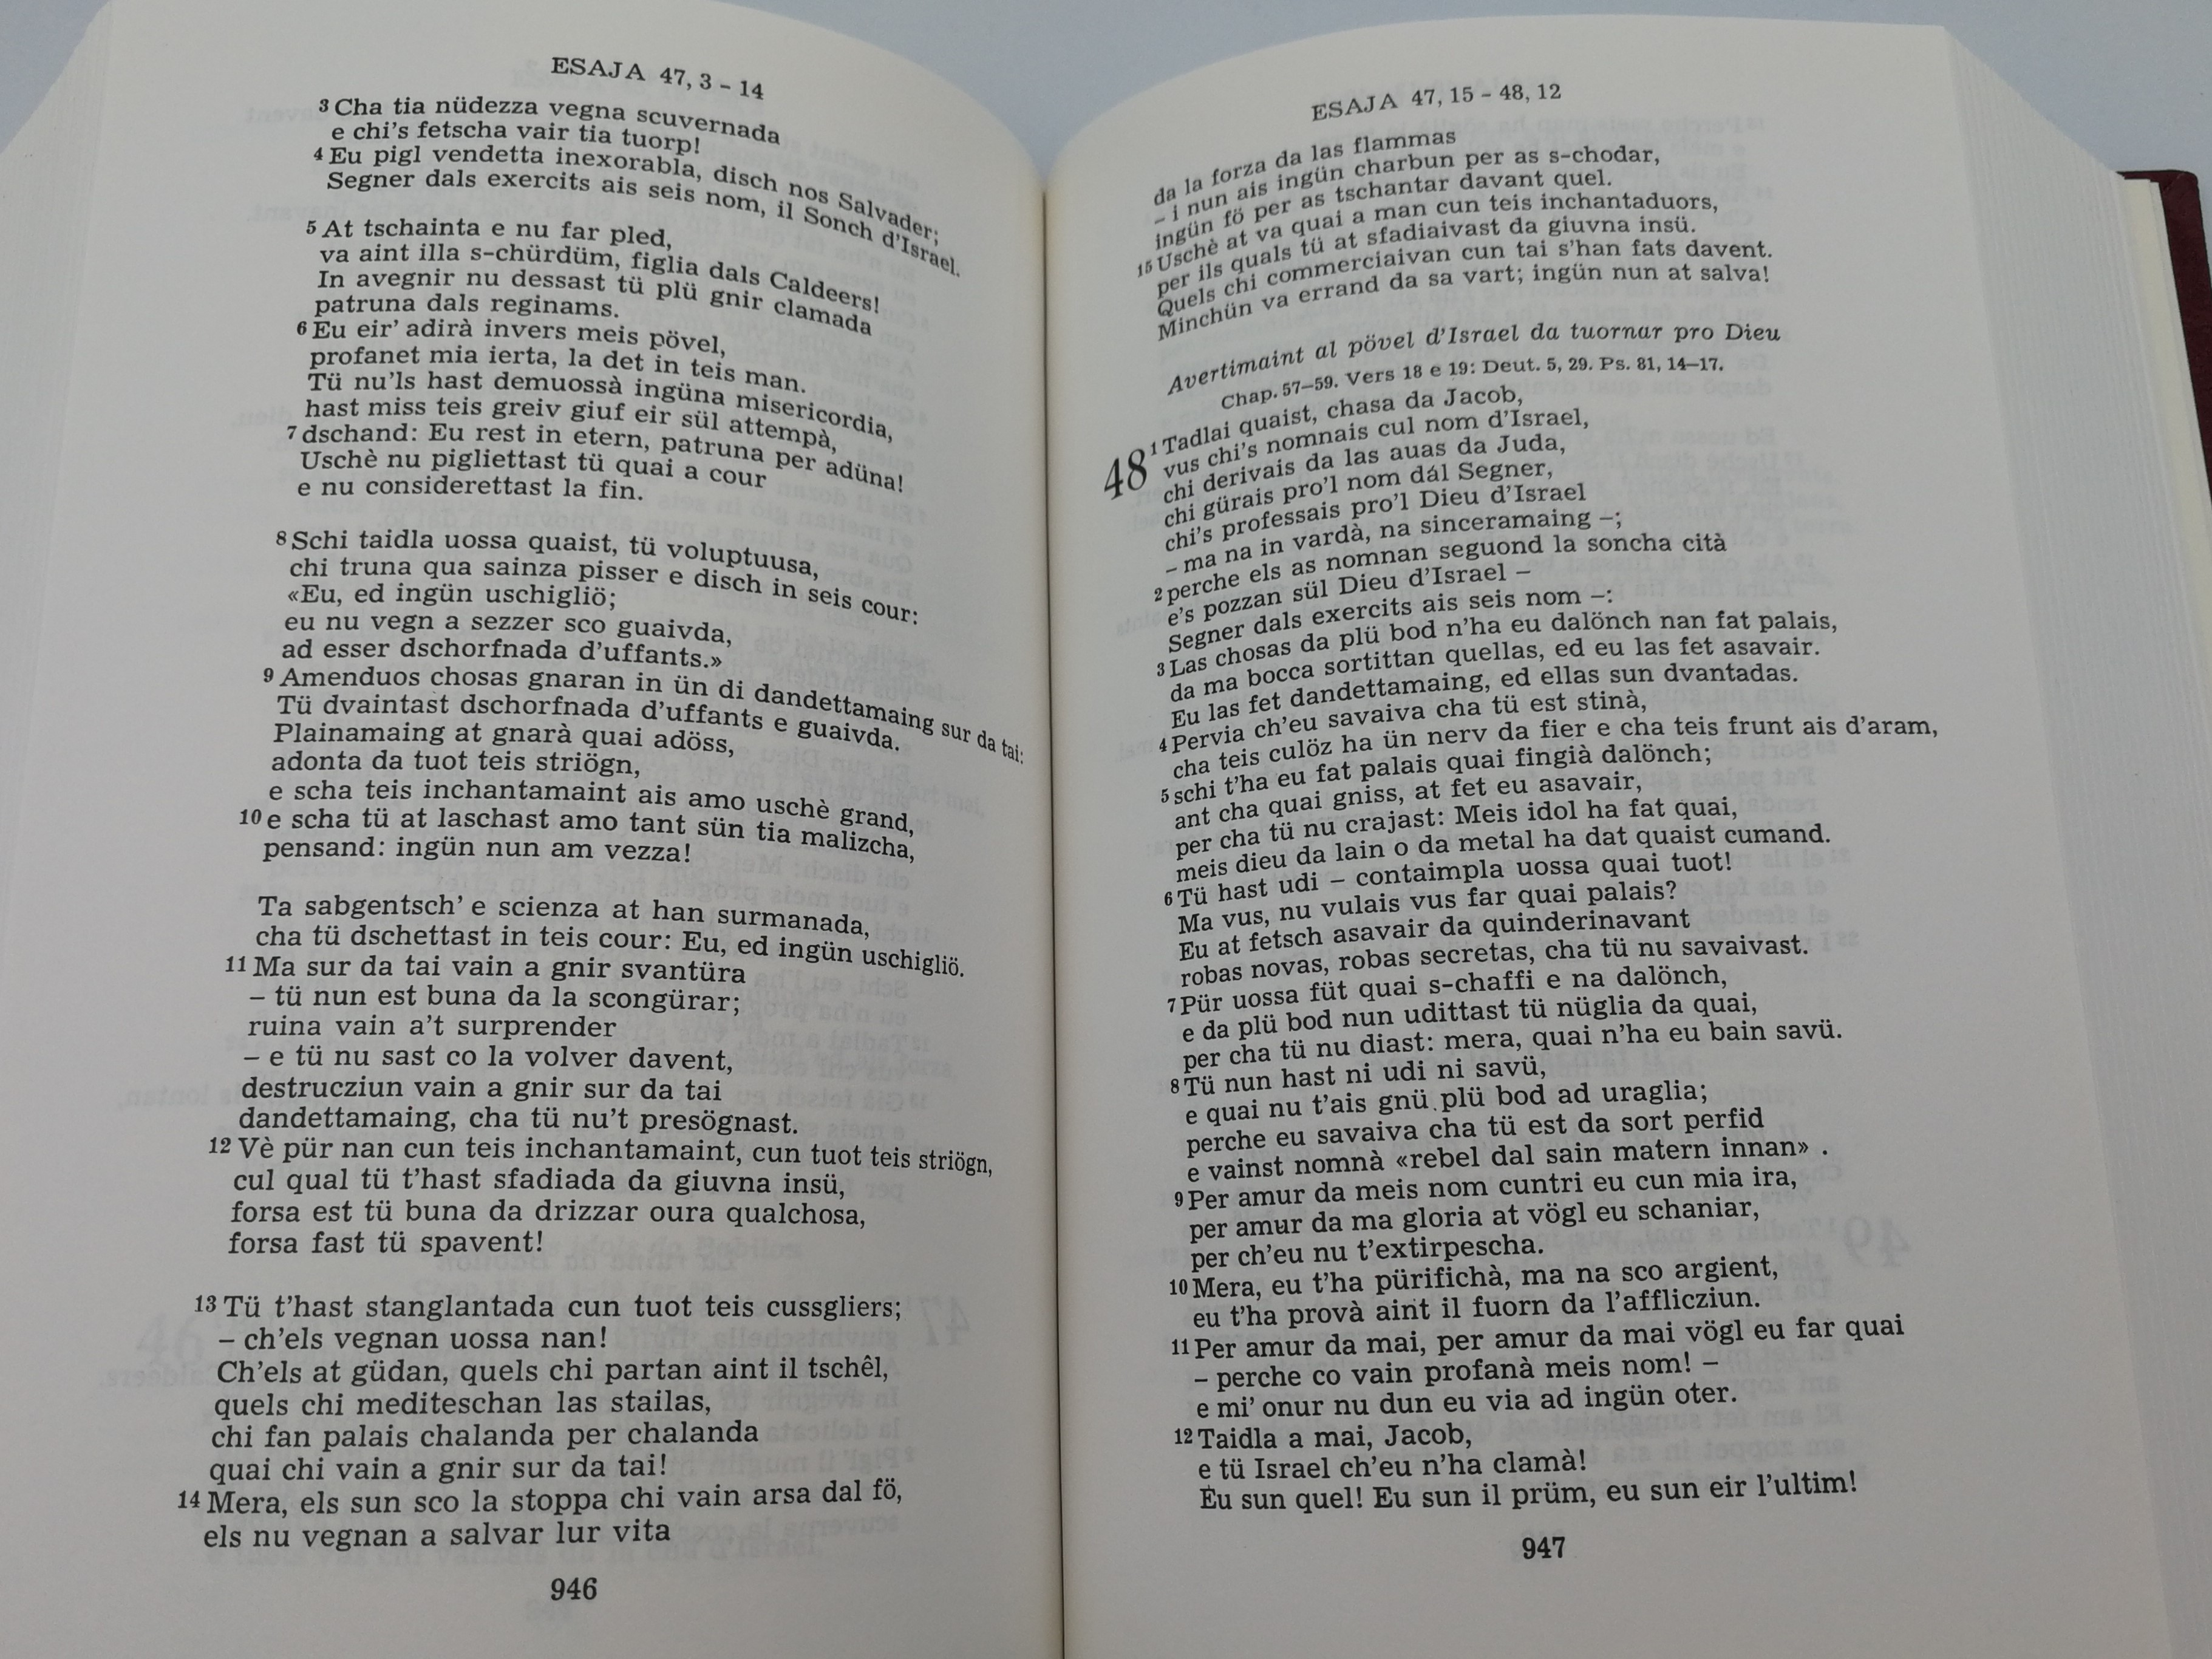 1-vallader-romansch-language-bible-la-soncha-scritt-ra-switzerland-romance-language-jachen-ulrich-gaudenz-rudolf-filli-11-.jpg